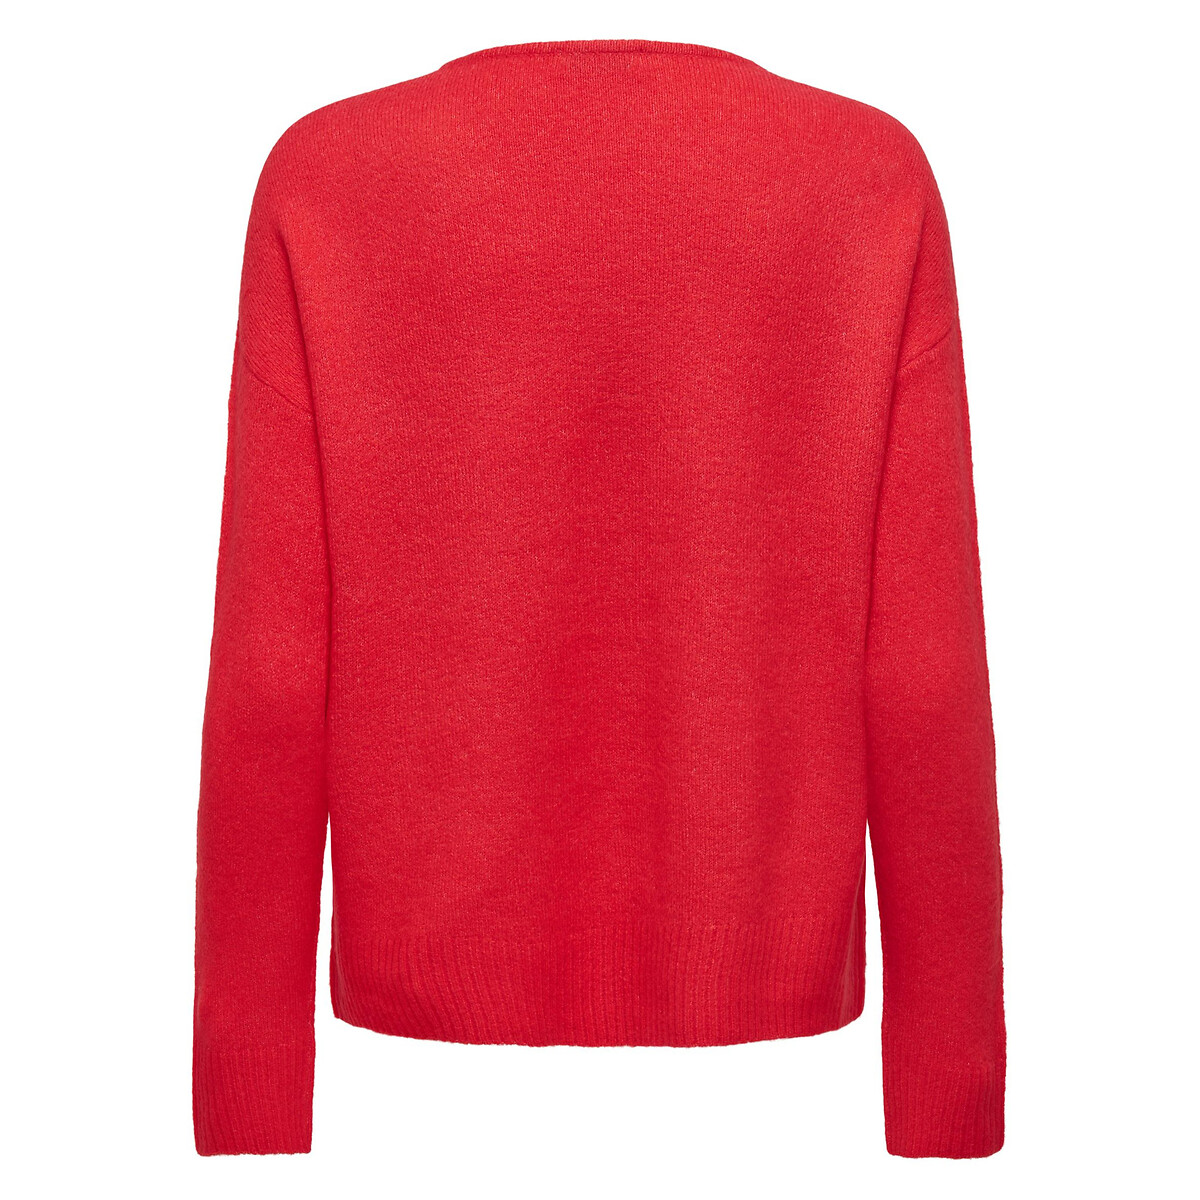 Пуловер С V-образным вырезом из пышного трикотажа S красный LaRedoute, размер S - фото 4